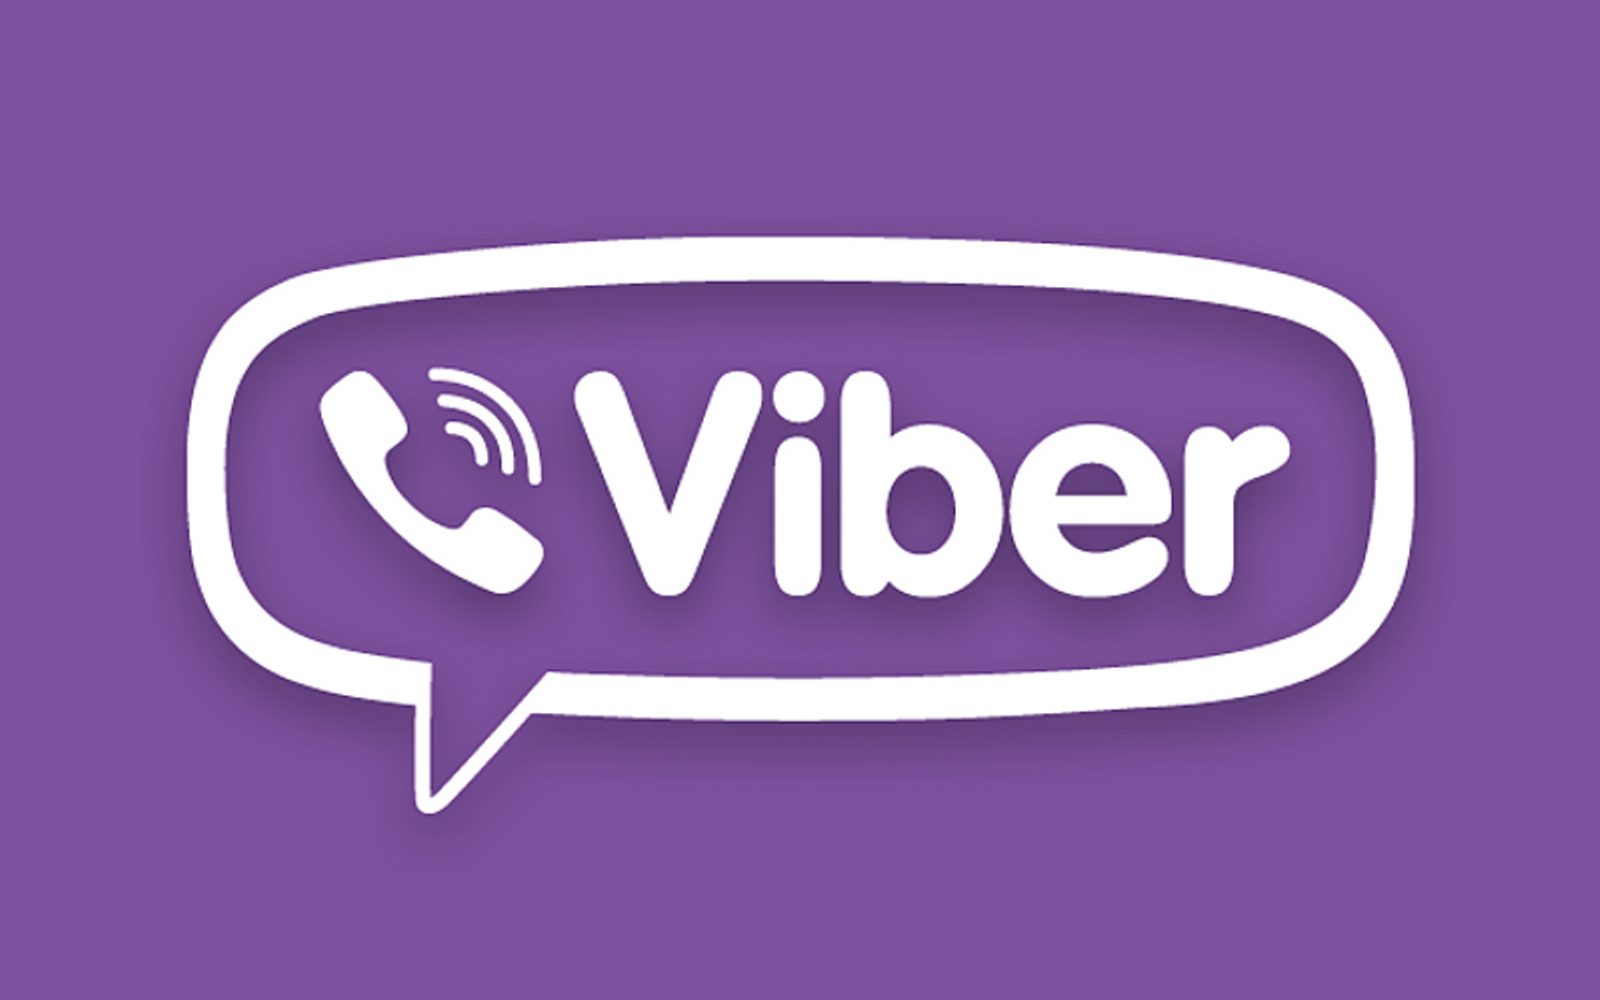 Viber подготовил множество обновление для пользователей и бизнеса